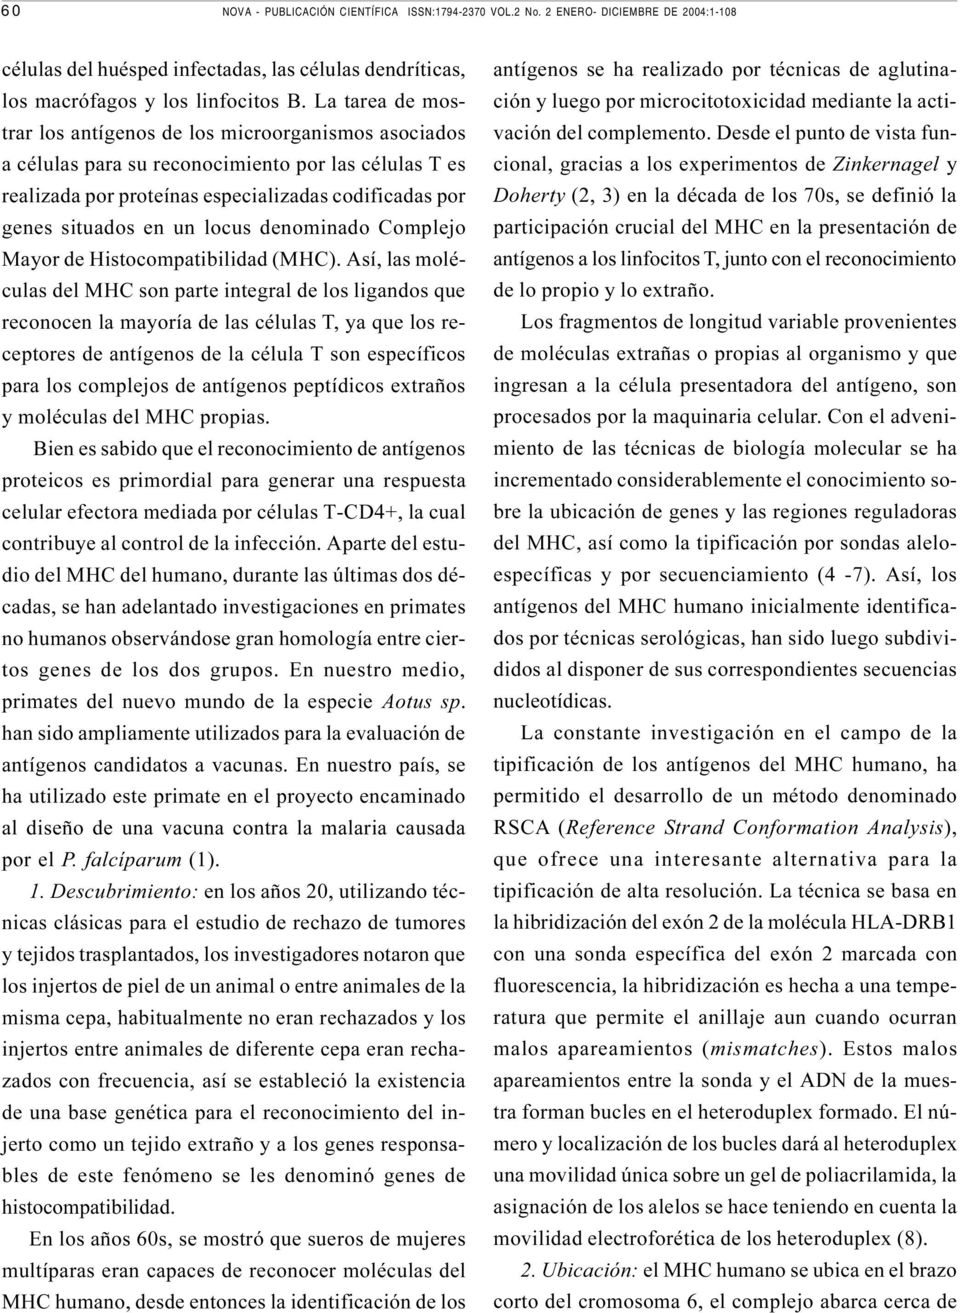 locus denominado Complejo Mayor de Histocompatibilidad (MHC).